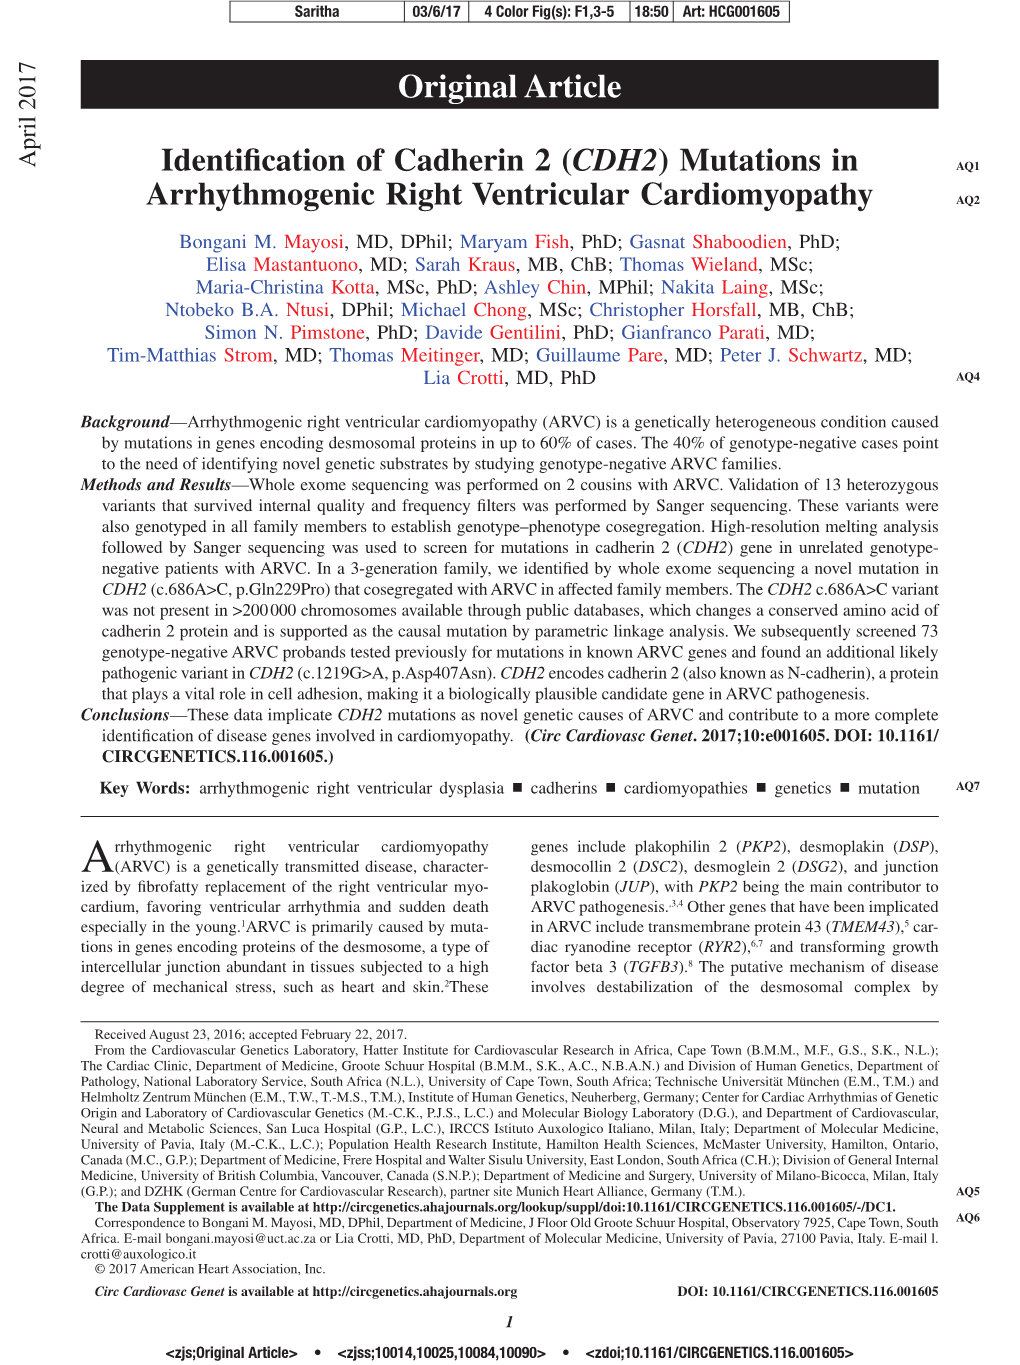 CDH2) Mutations in AQ1 Arrhythmogenic Right Ventricular Cardiomyopathy AQ2